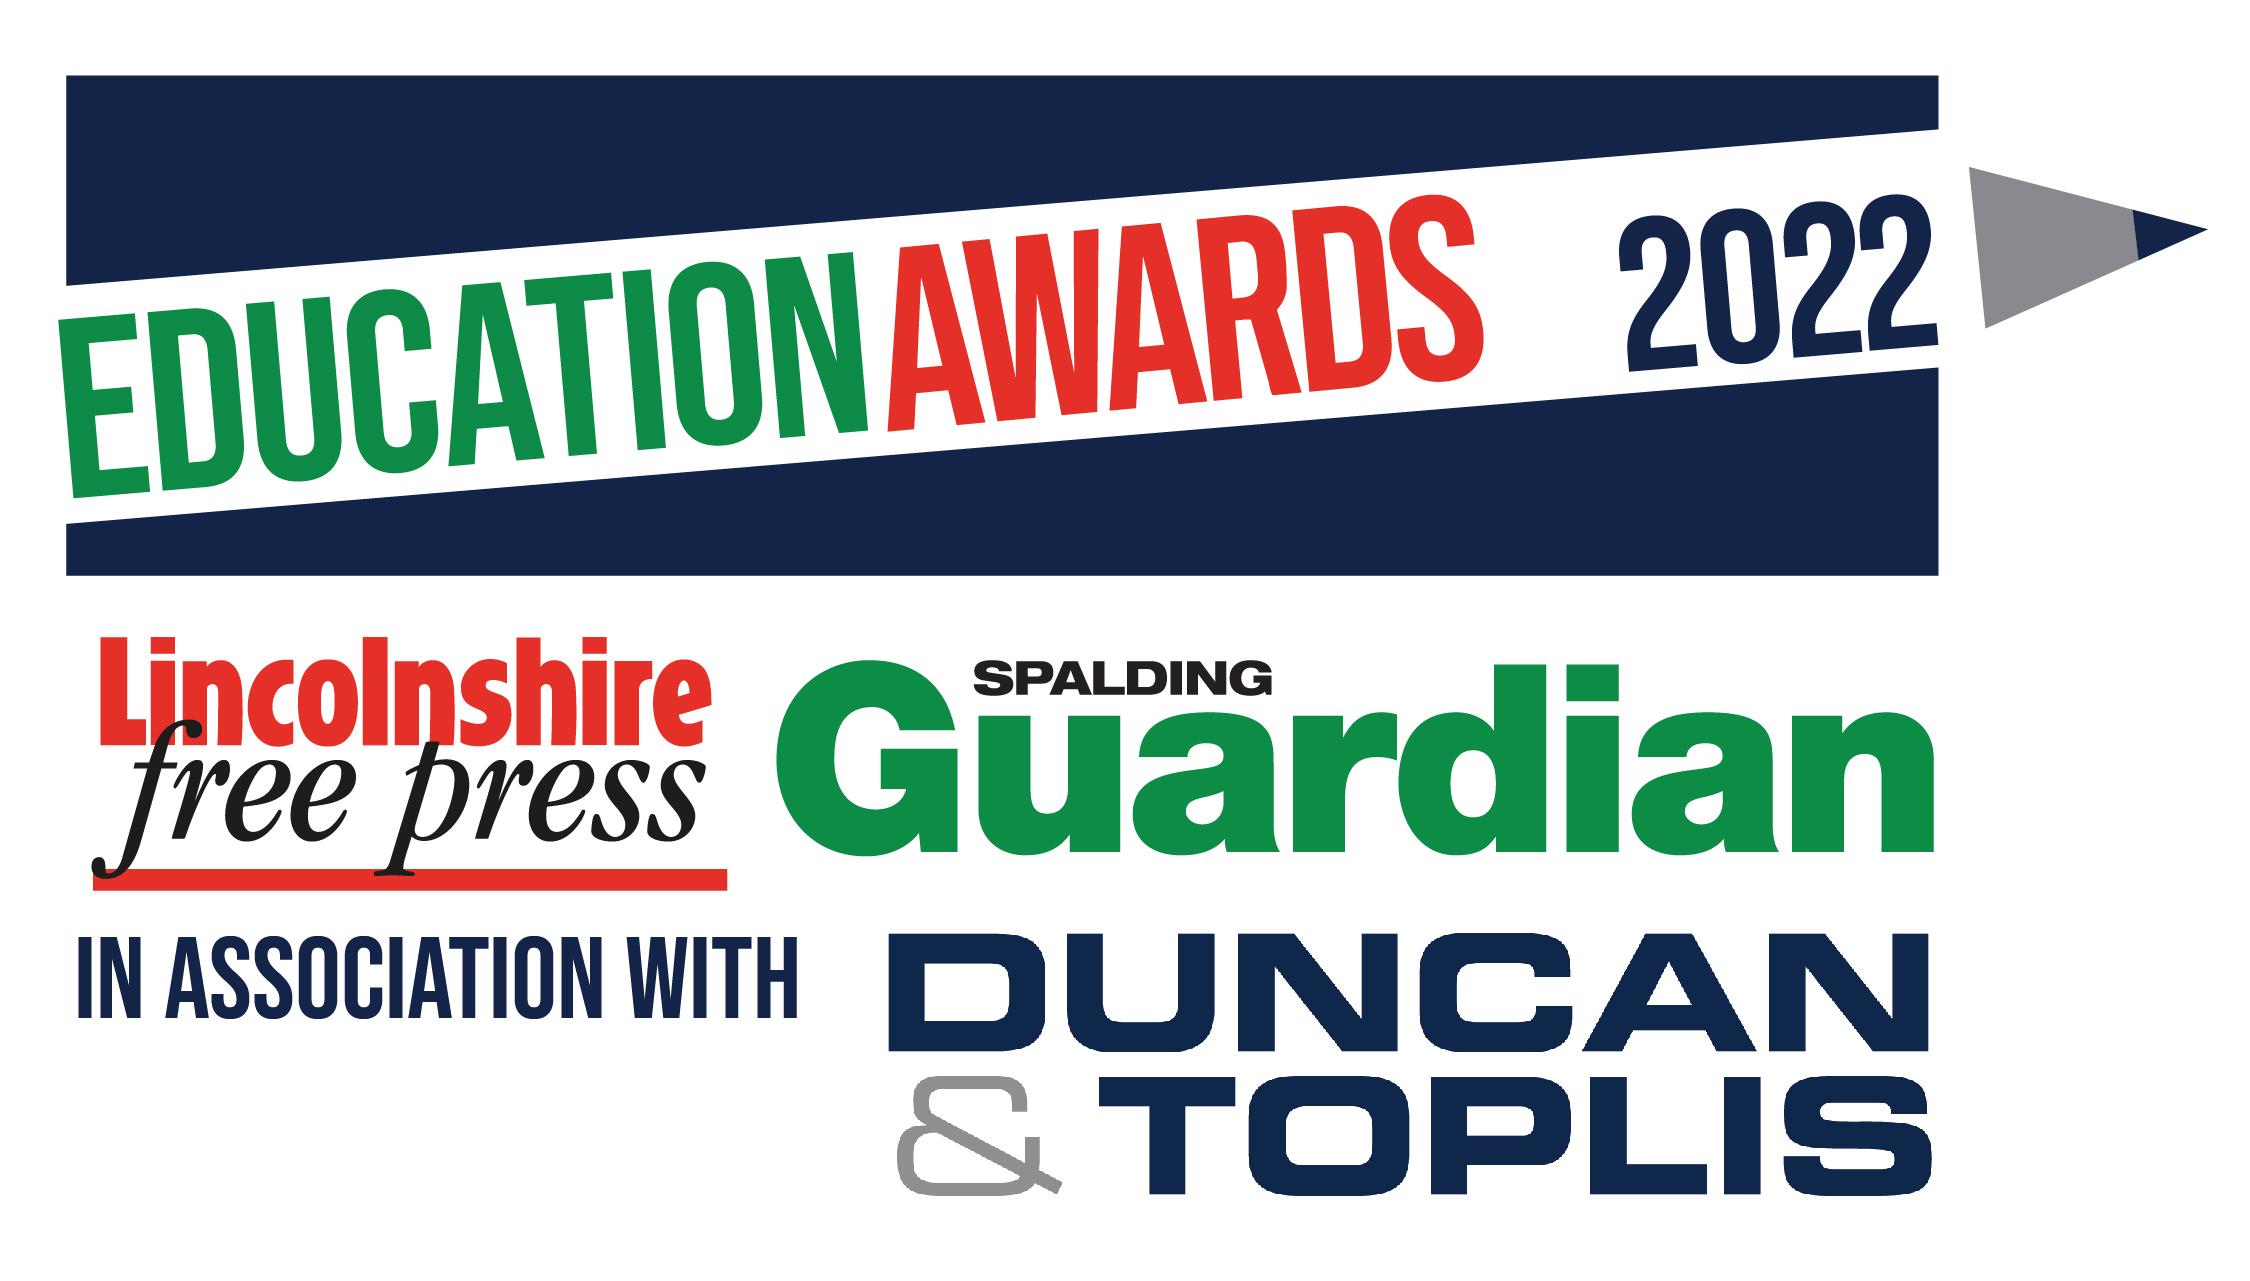 Spalding Education Awards Logo